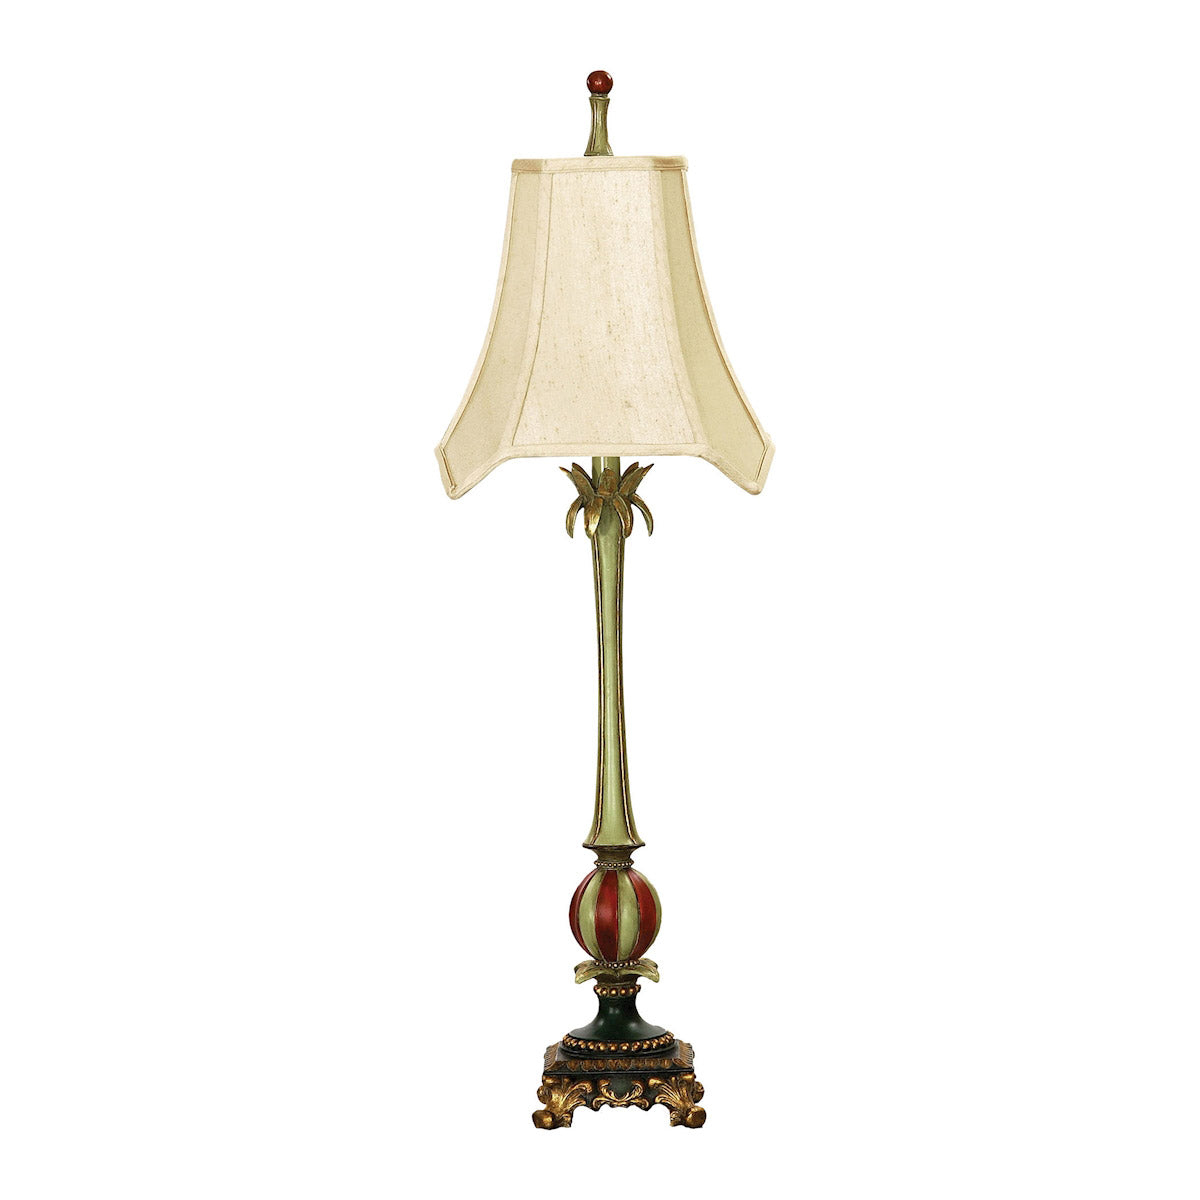 Dimond Lighting Whimsical Elegance Table Lamp in Columbus Finish Table Lamps, Dimond Lighting, - Modish Store